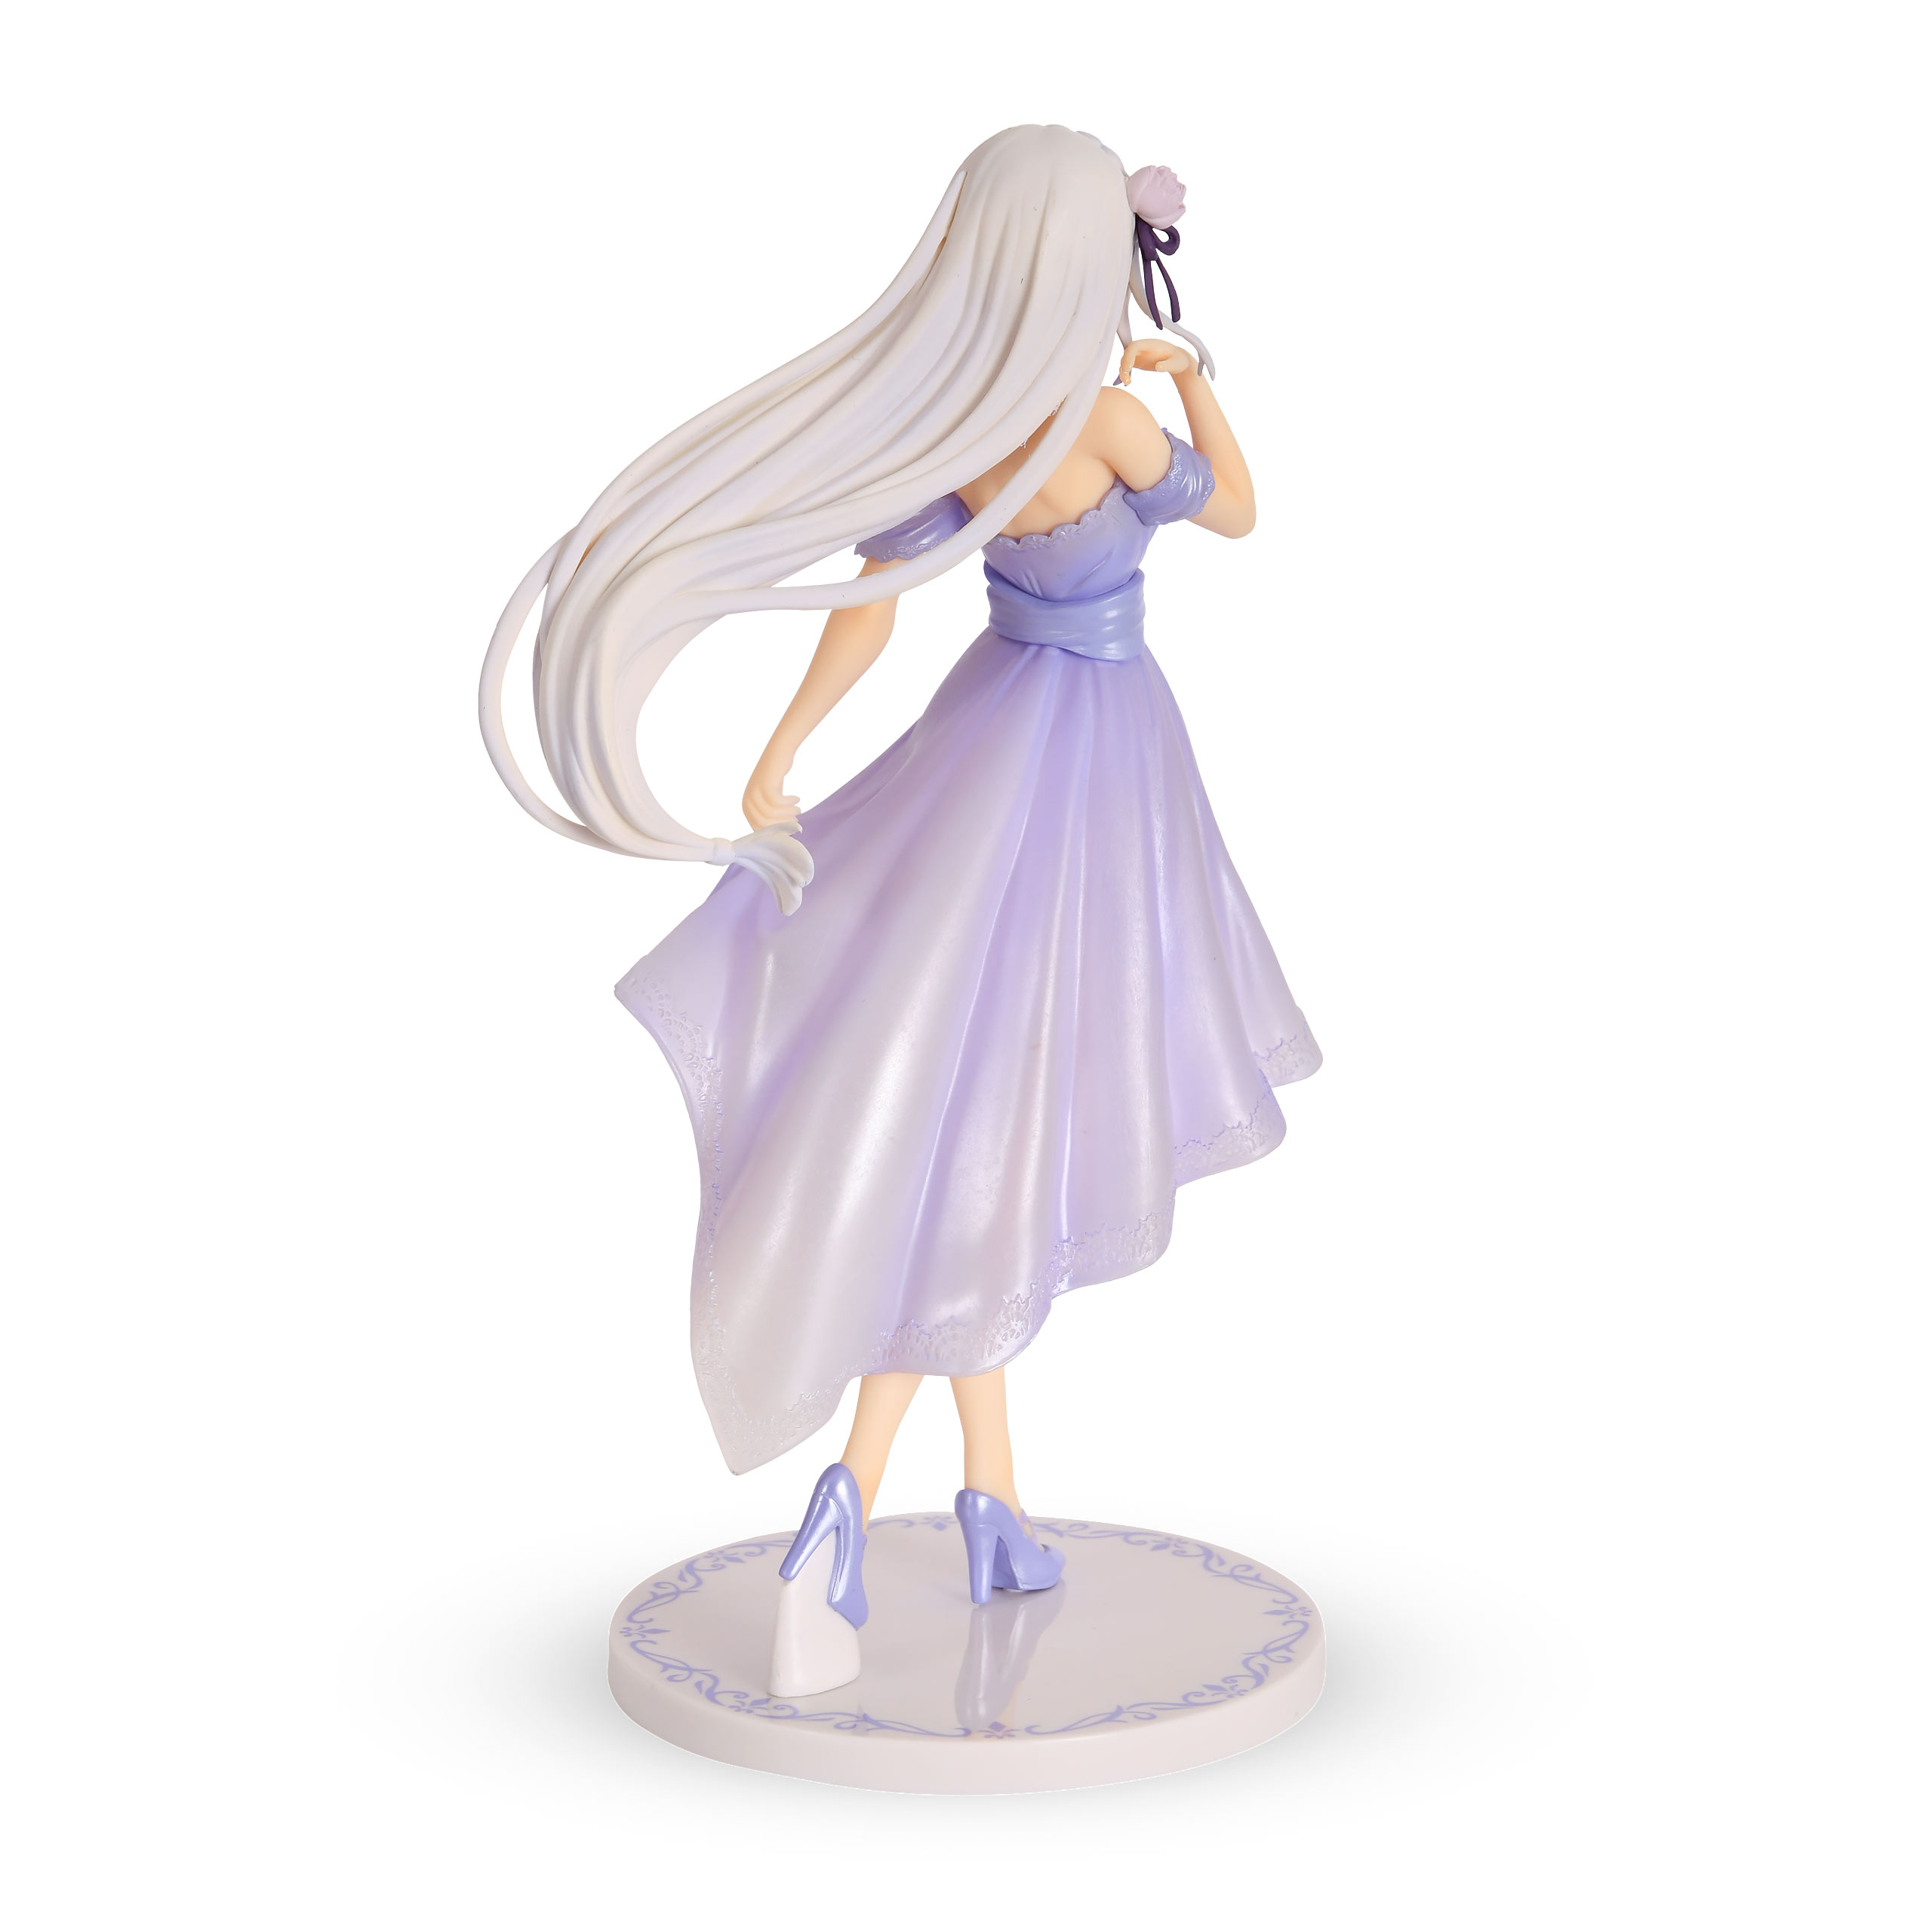 Re:Zero - Emilia Dreaming Future Story Figurine